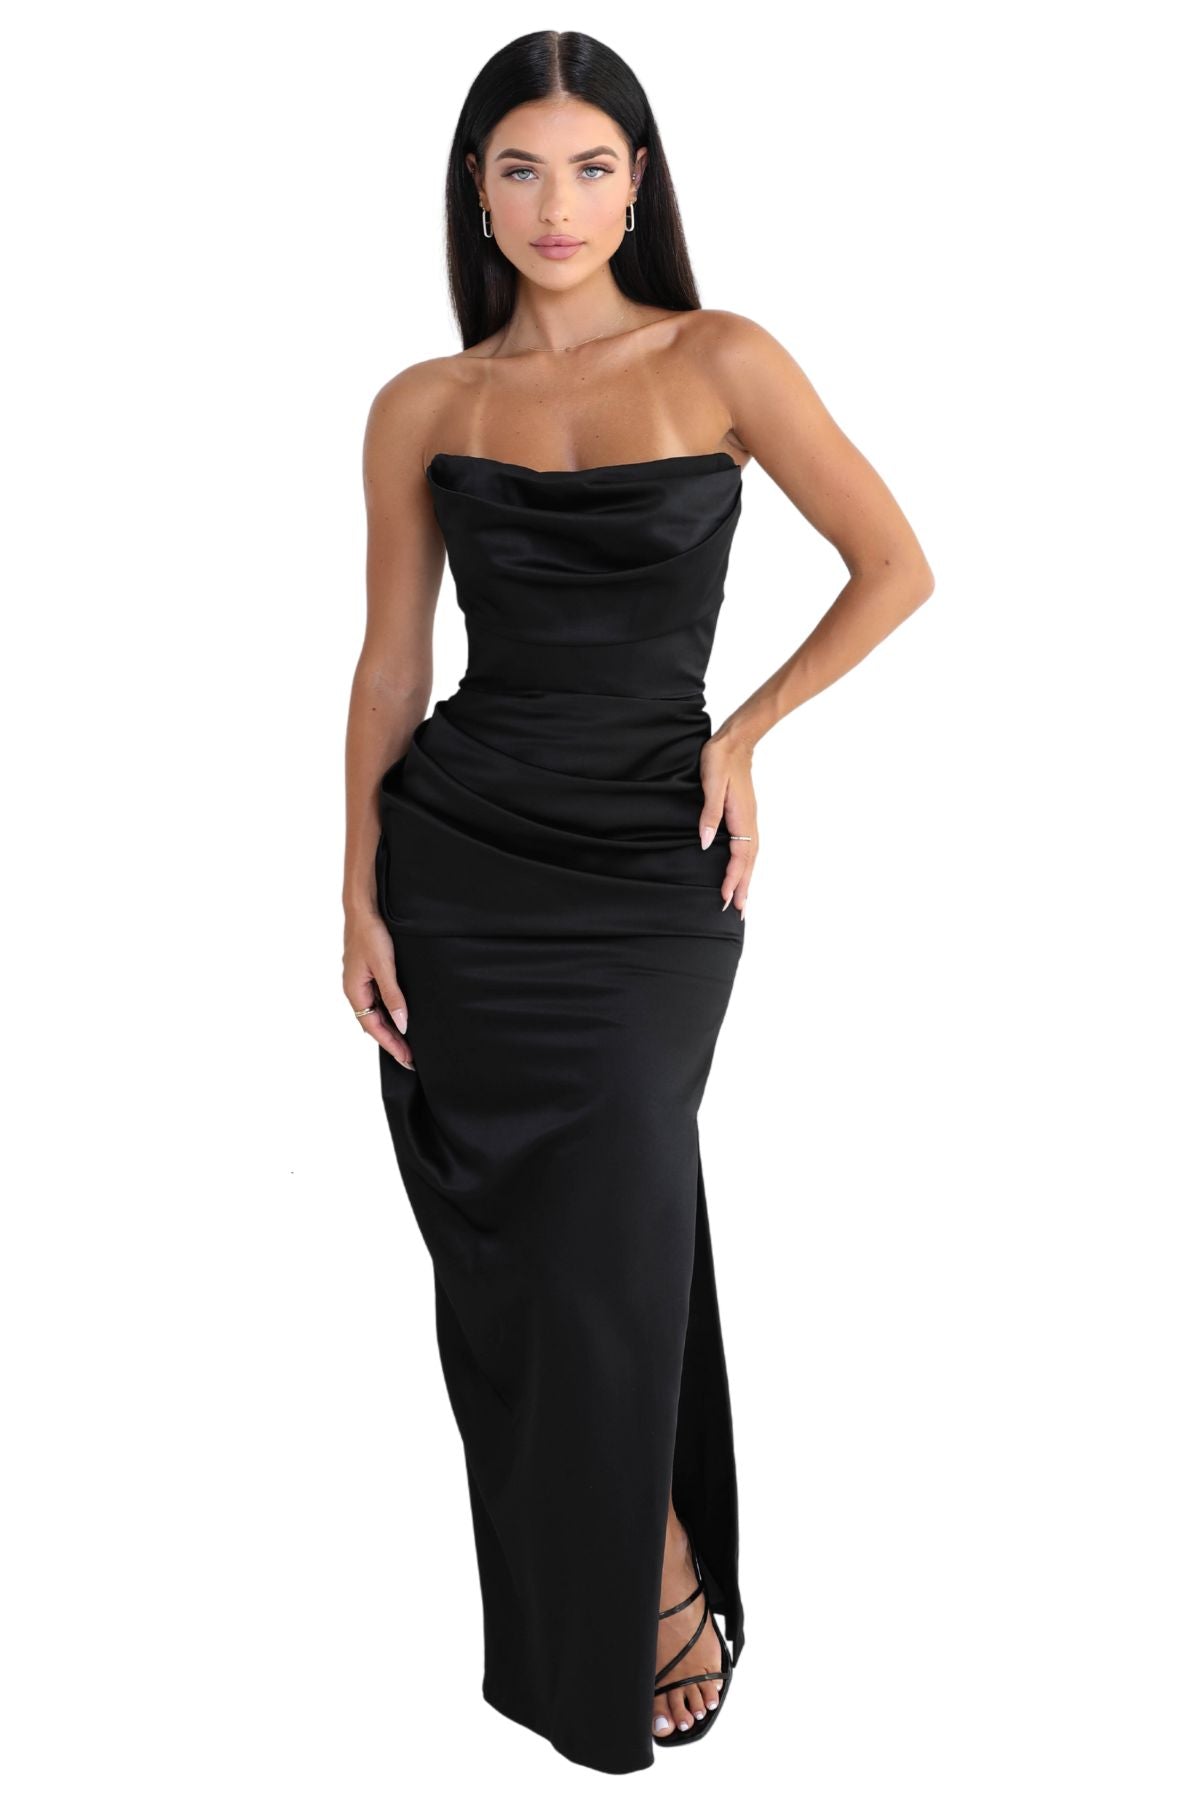 Plus Size Black-Tie Event Dresses | Special Occasion Gowns – Sydney's Closet